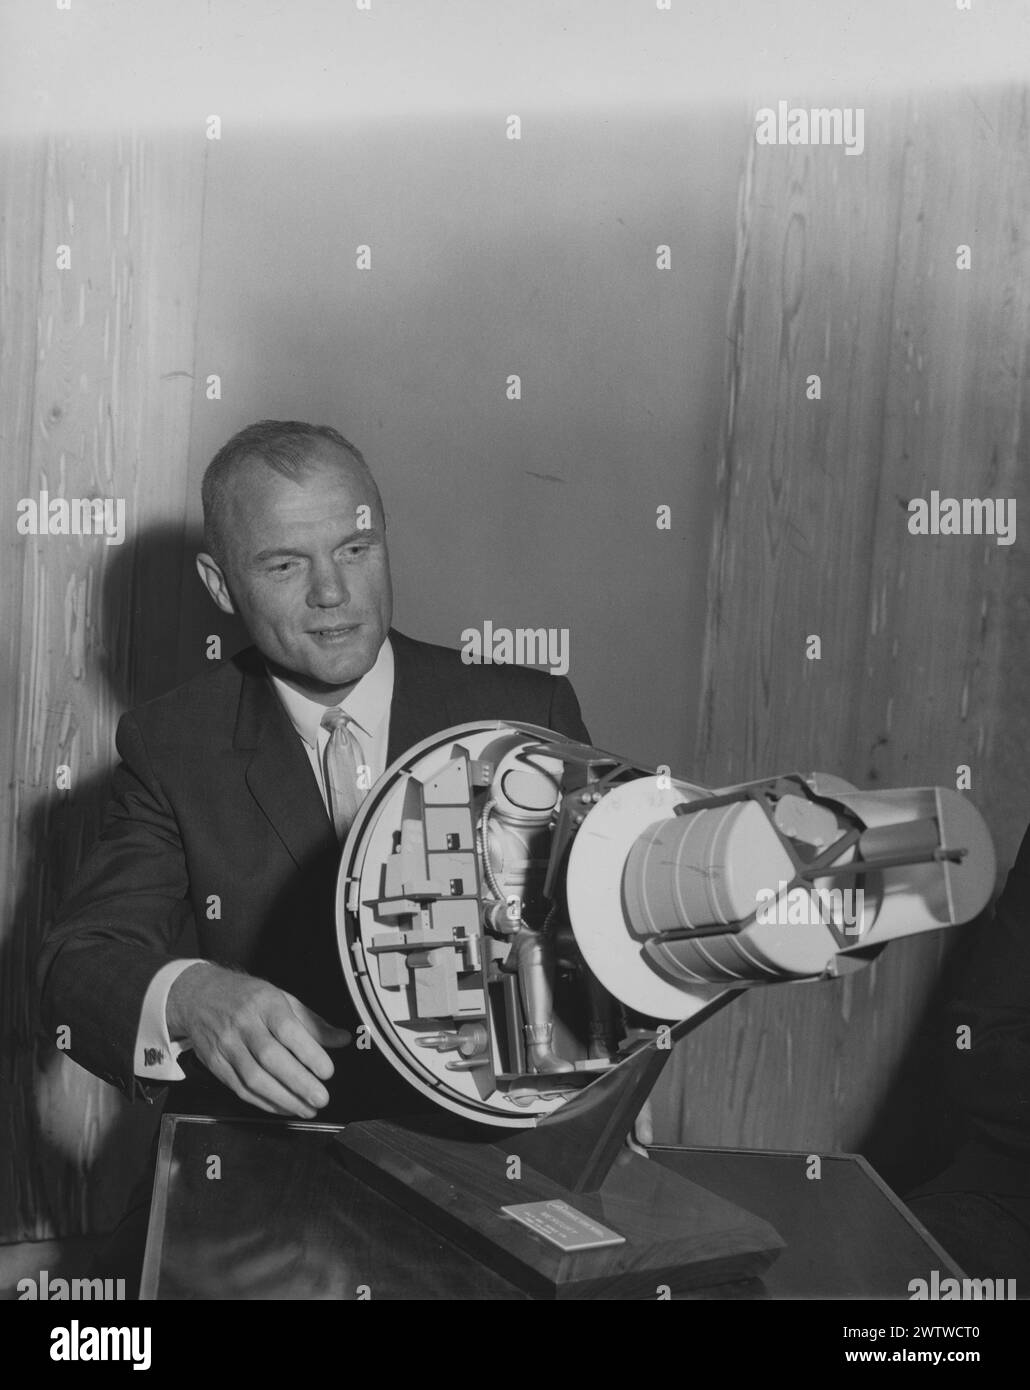 L'astronaute AMÉRICAIN John Glenn assis à une table avec une maquette de la capsule spatiale qu'il pilotera en orbite autour de la Terre Banque D'Images